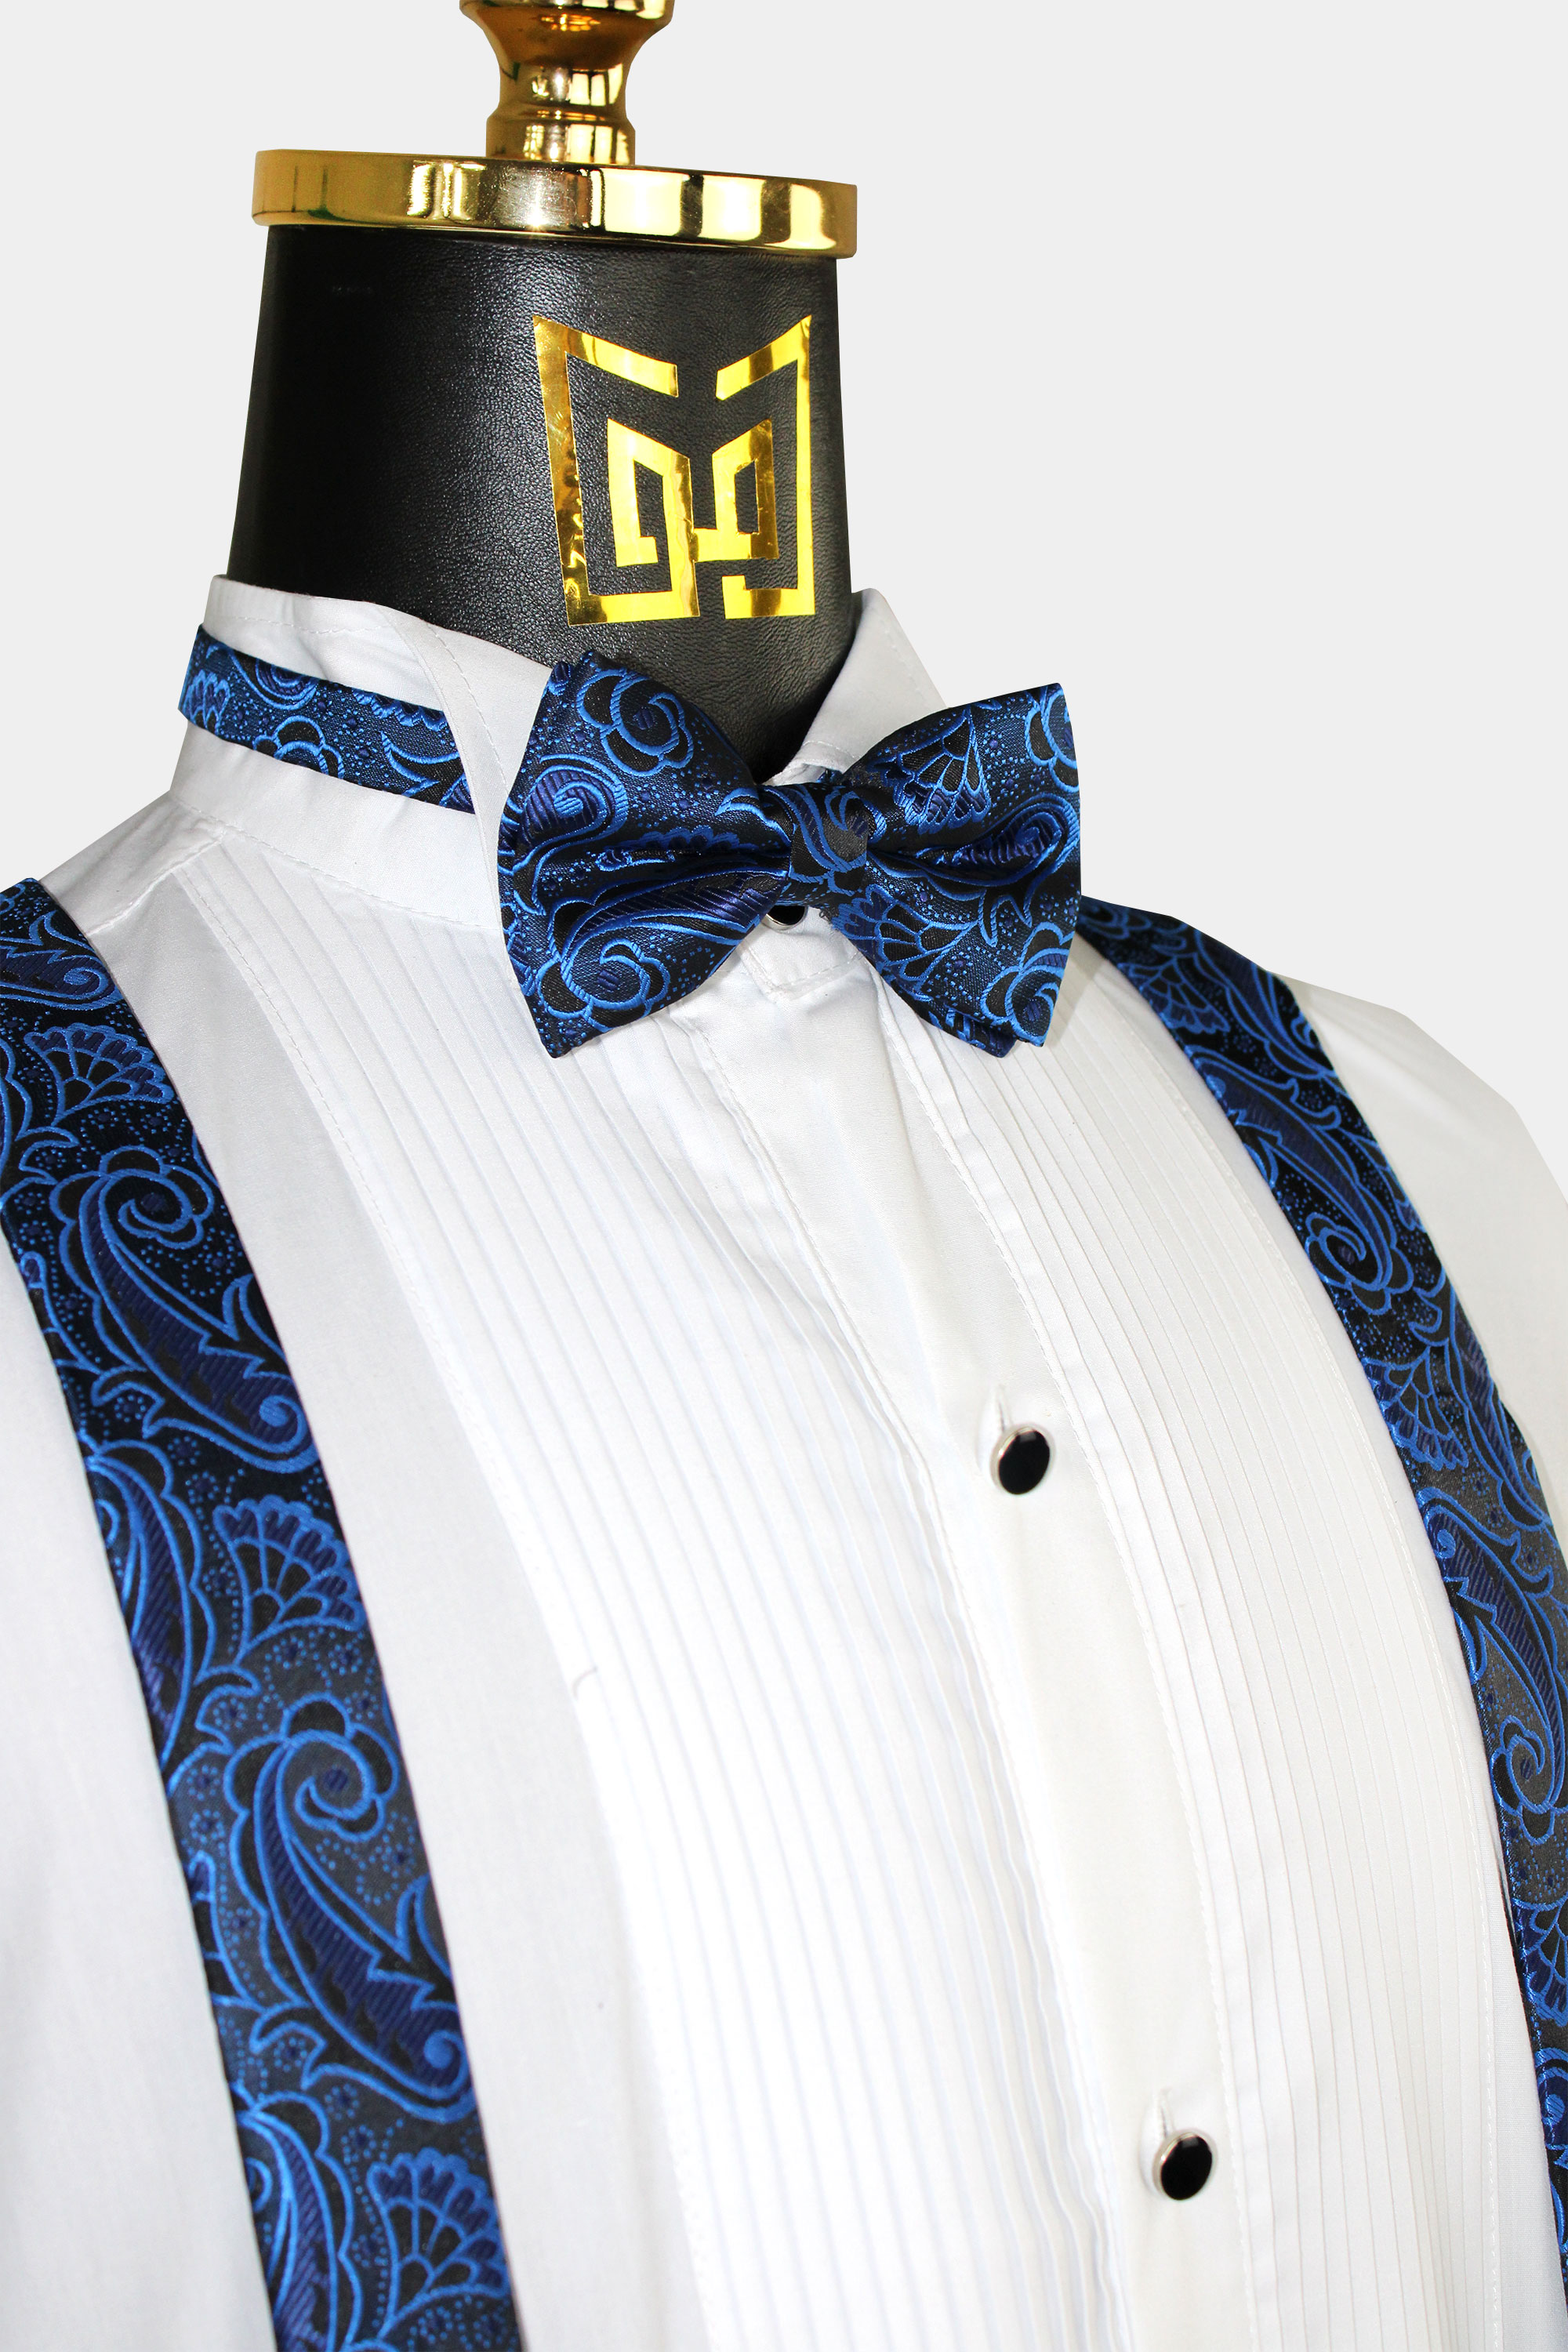 Royal-Blue-Paisley-Bow-Tie-and-Suspenders-Groomsmen-Wedding-from-Gentlemansguru.com